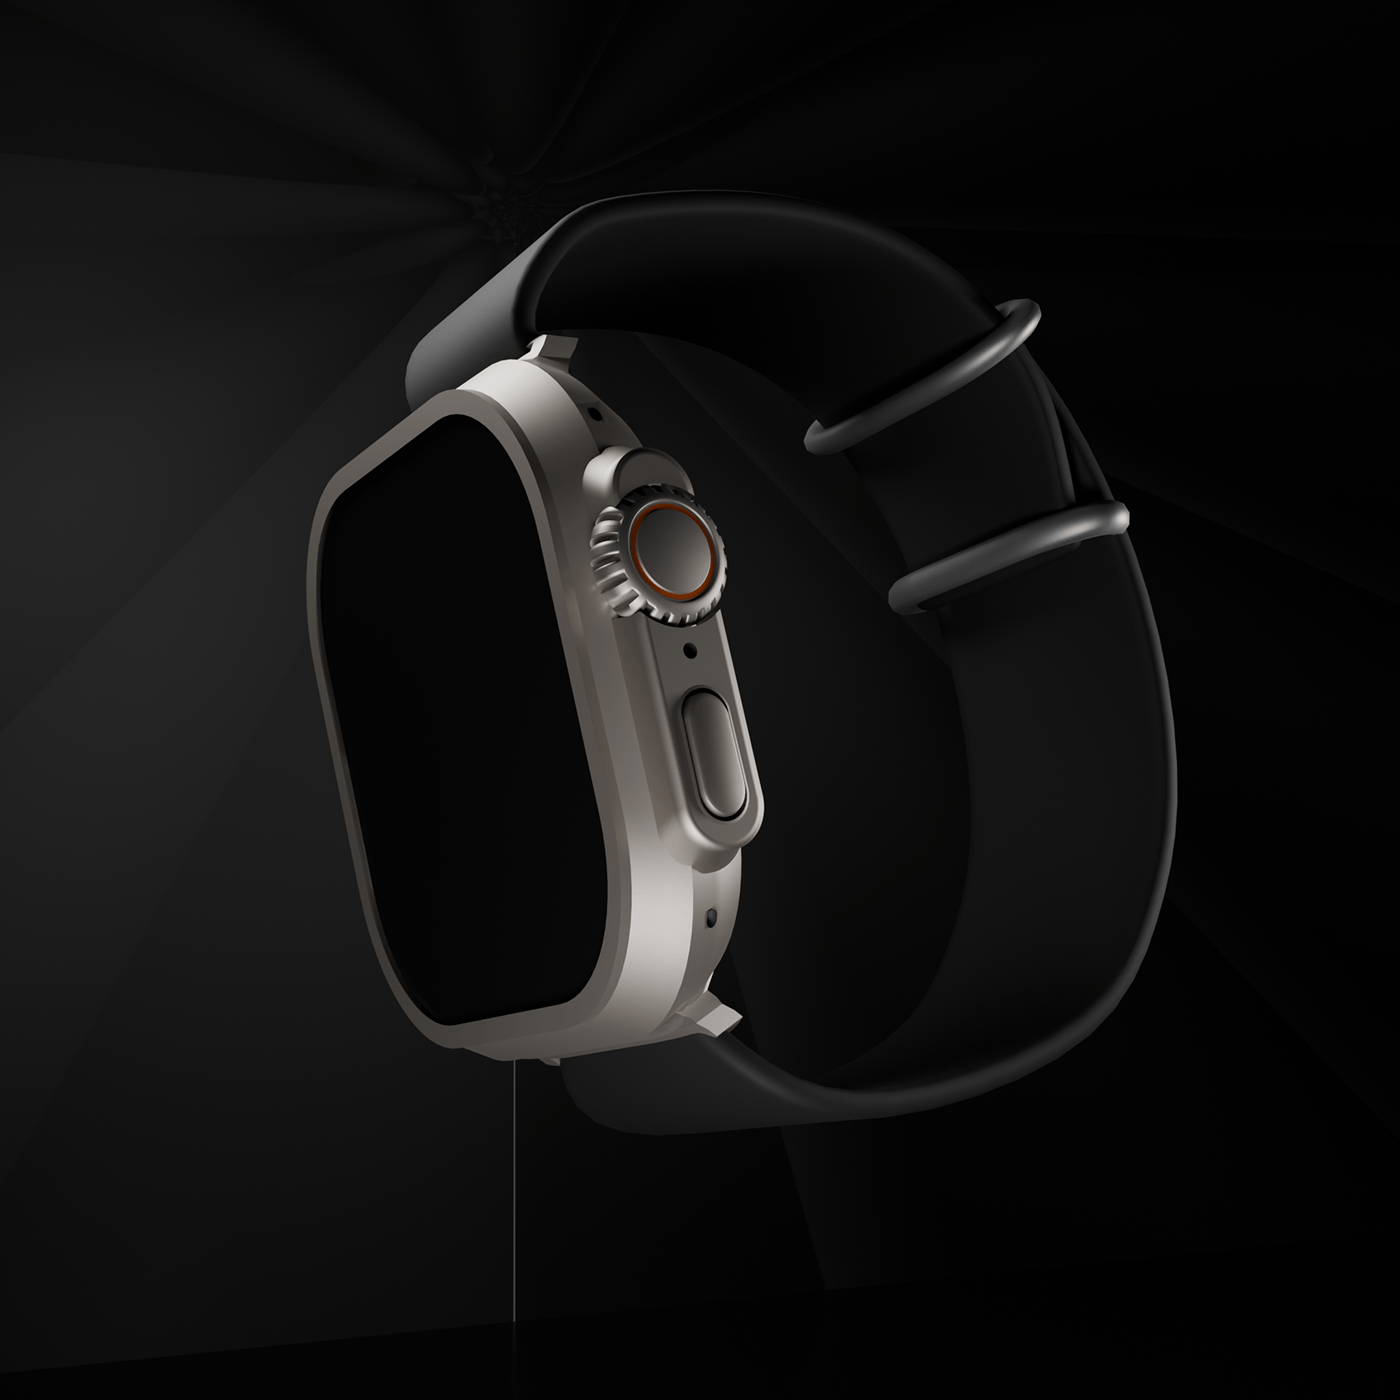 watch 3d modeling Render modern